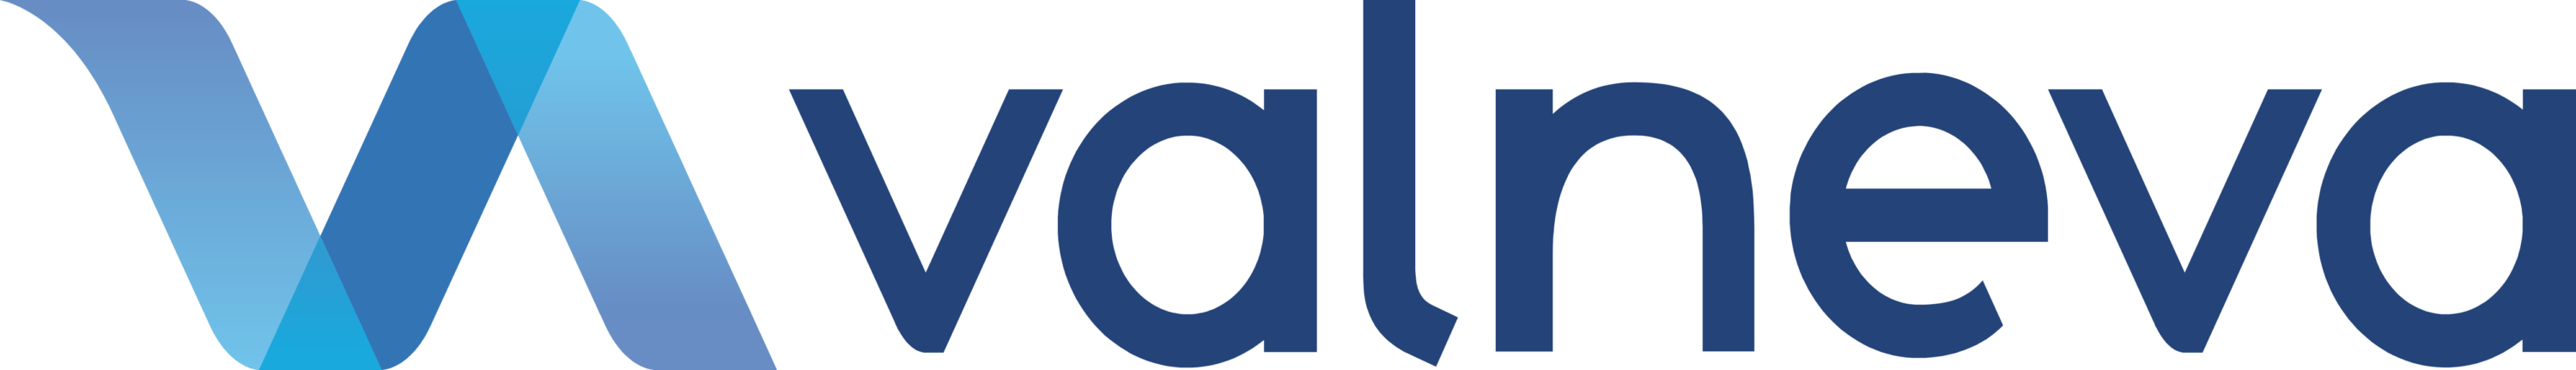 Valneva Logo